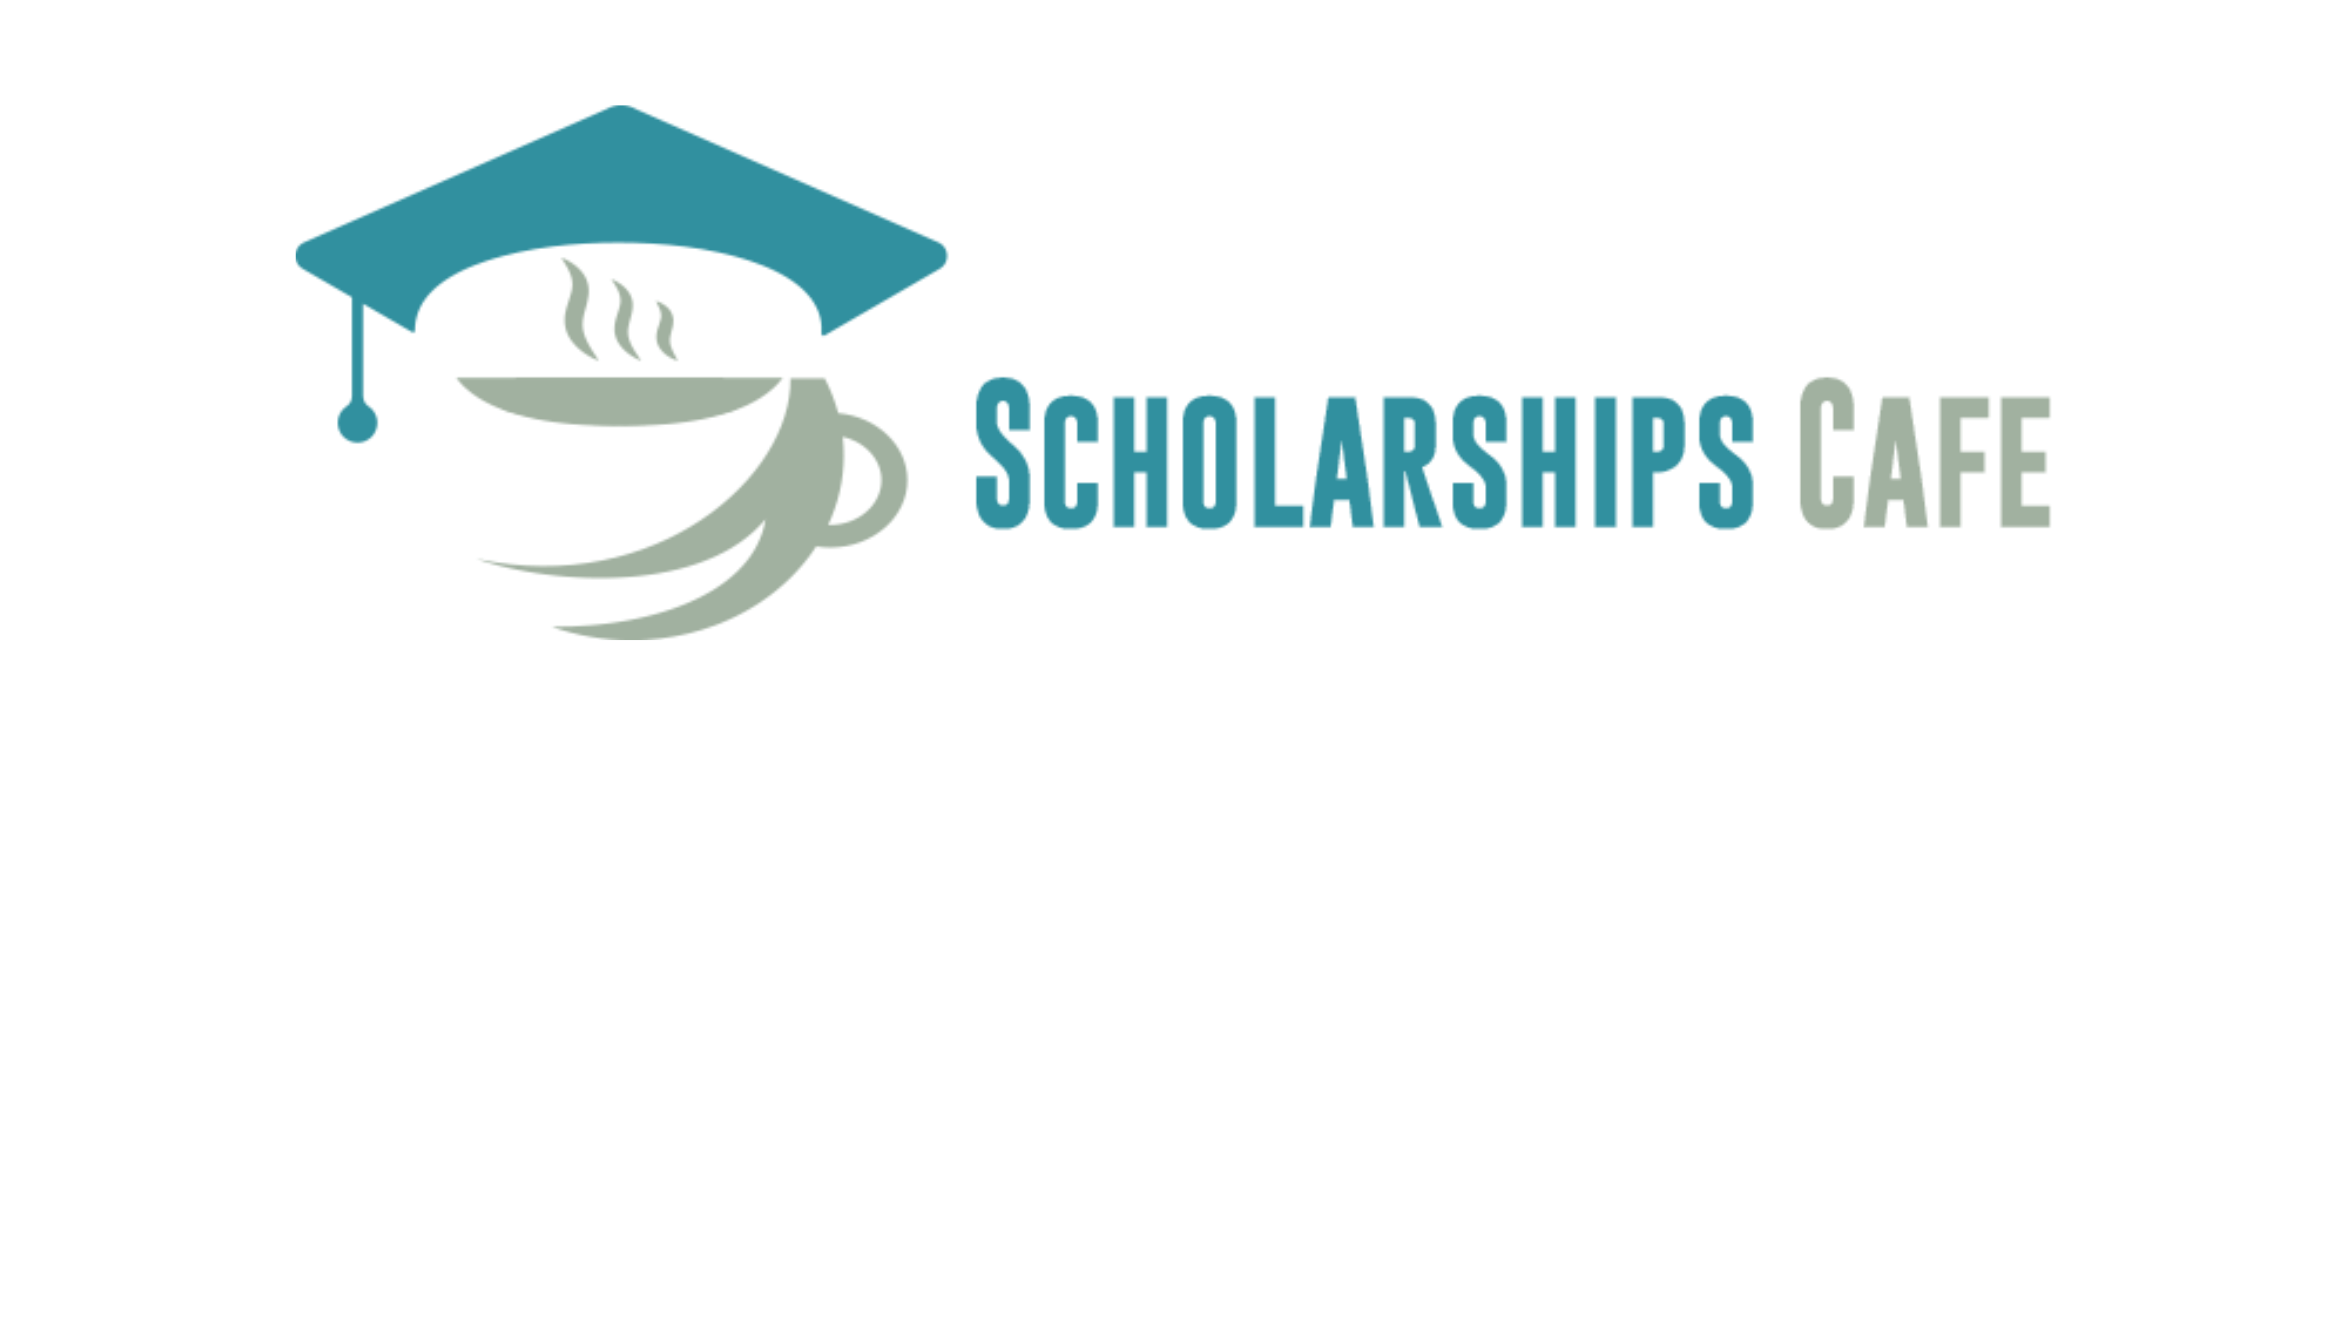 Scholarships Cafe Logo